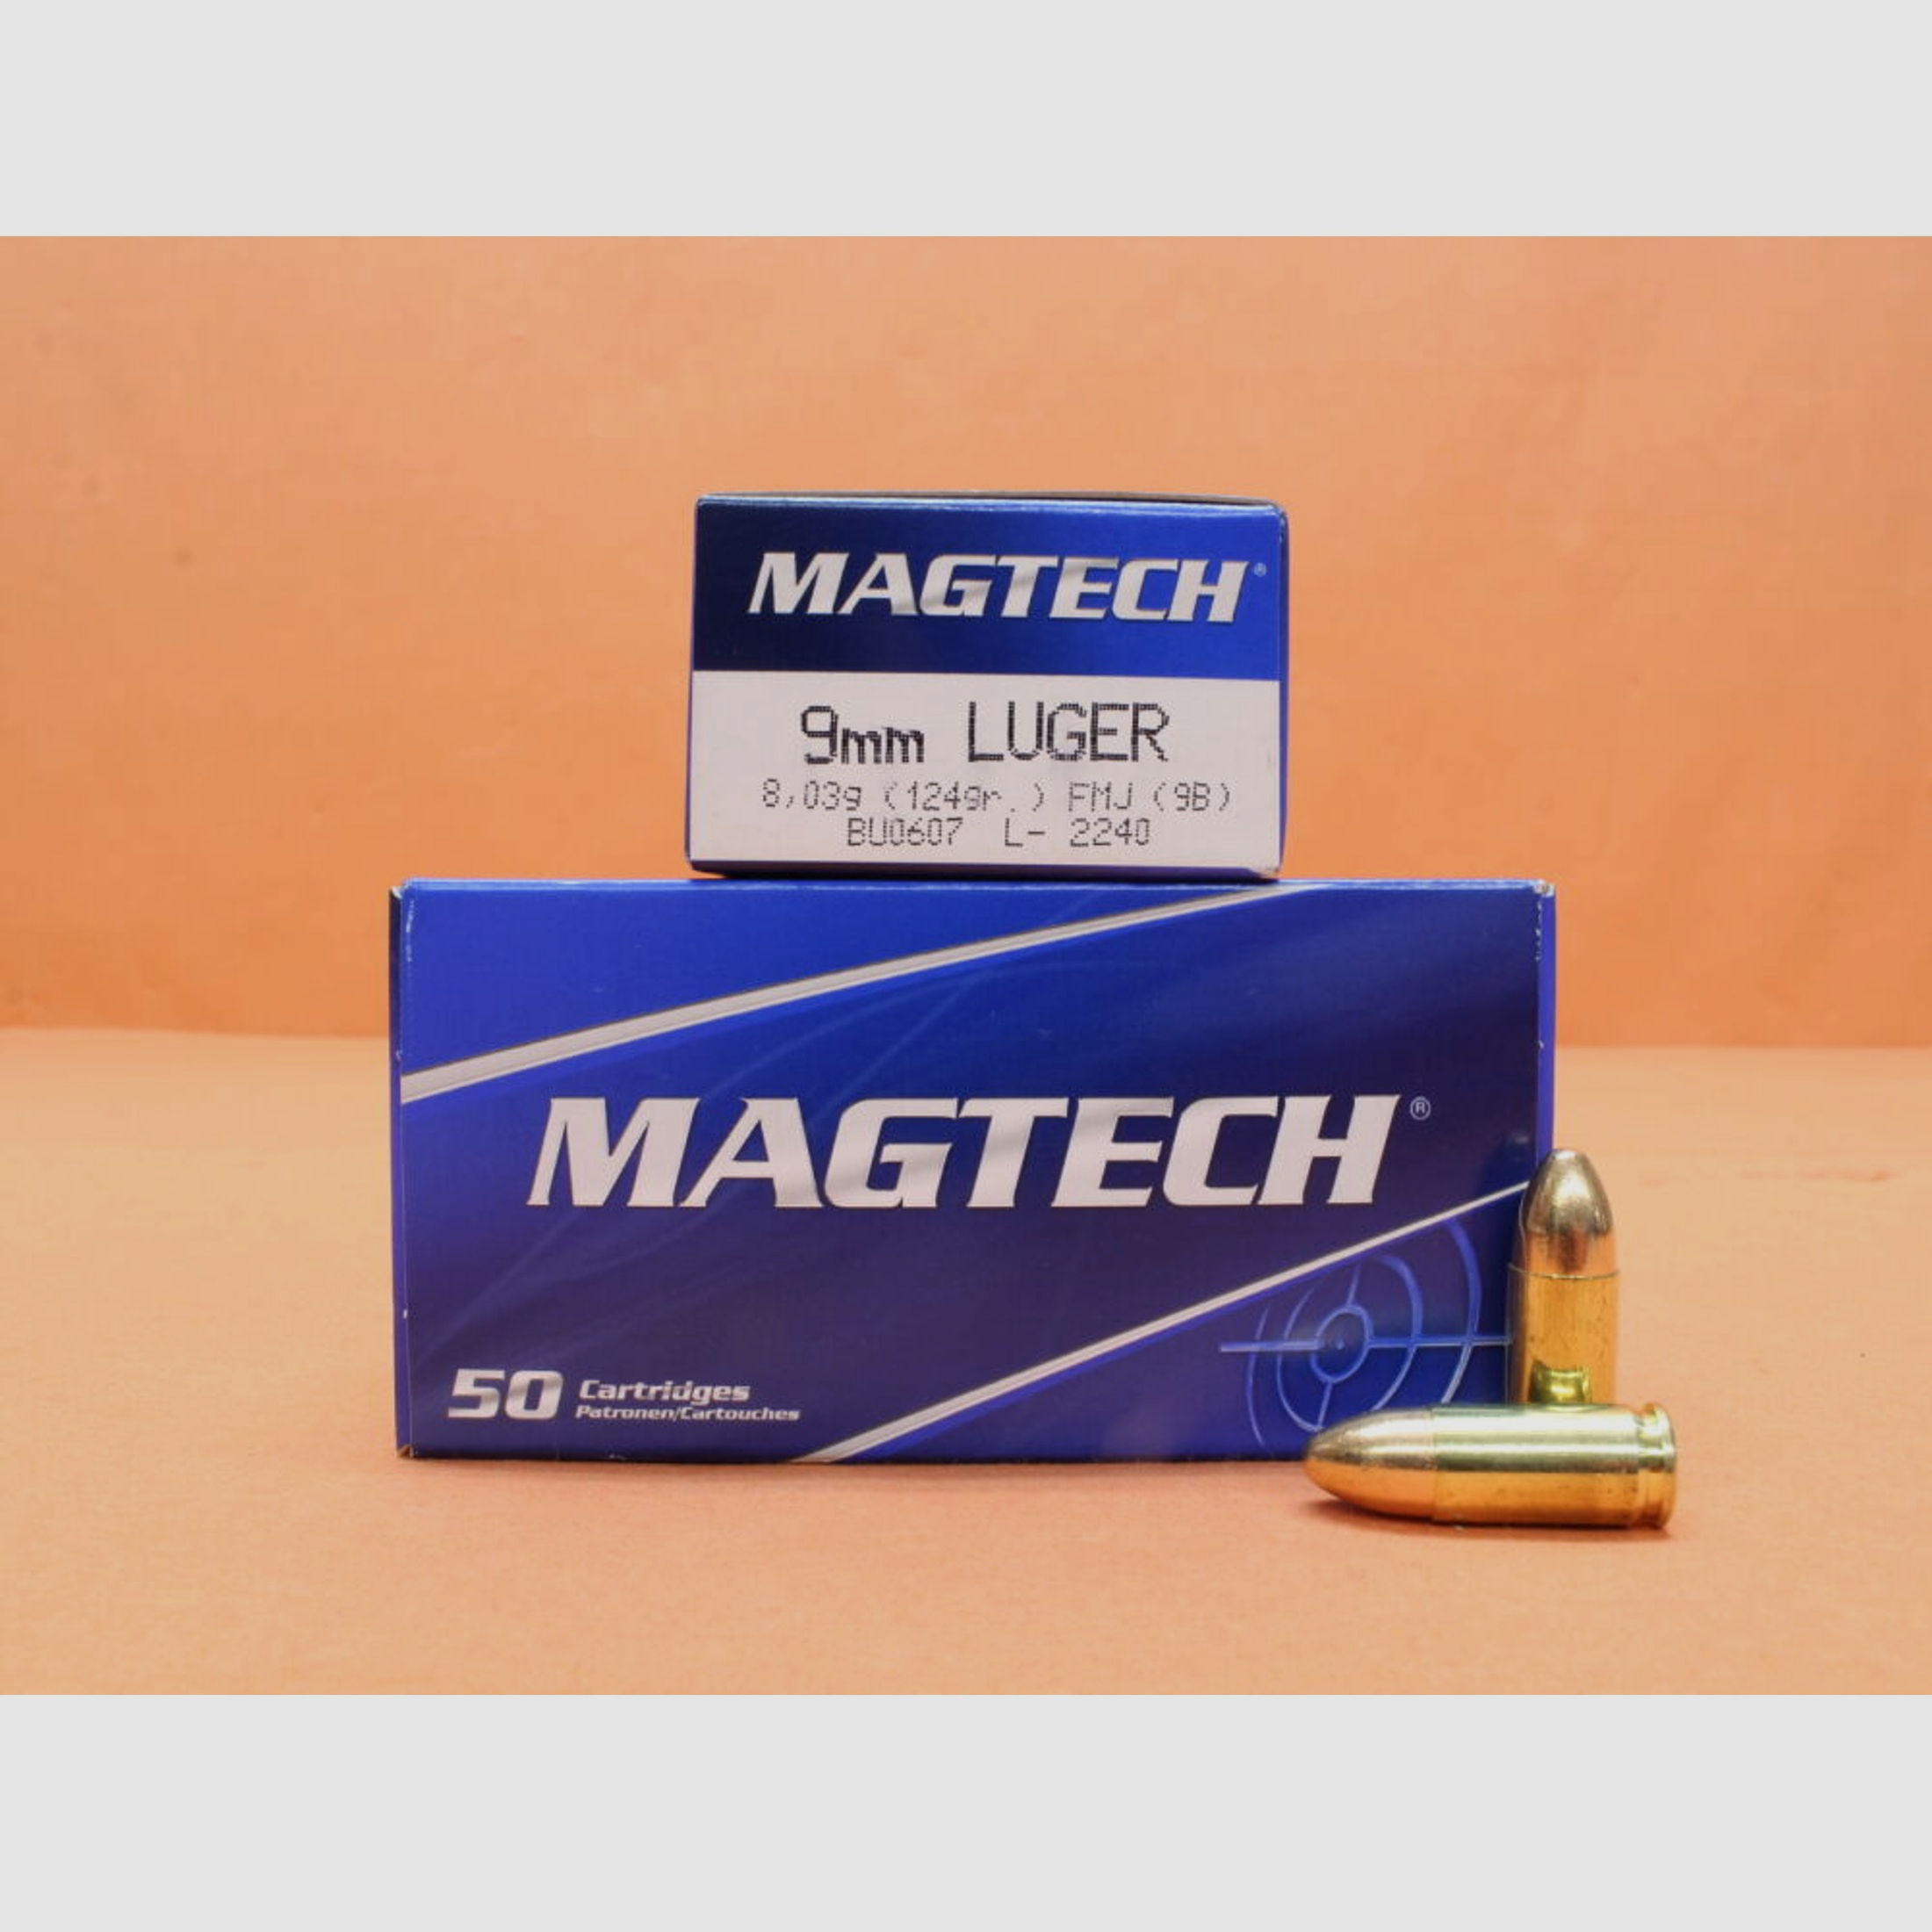 Magtech	 Patrone 9mmLuger Magtech 124grs FMJ/ FMC (9B) 20 x VE 50 = 1000 Patronen/ Vollmantel (9mmPara/9x19)